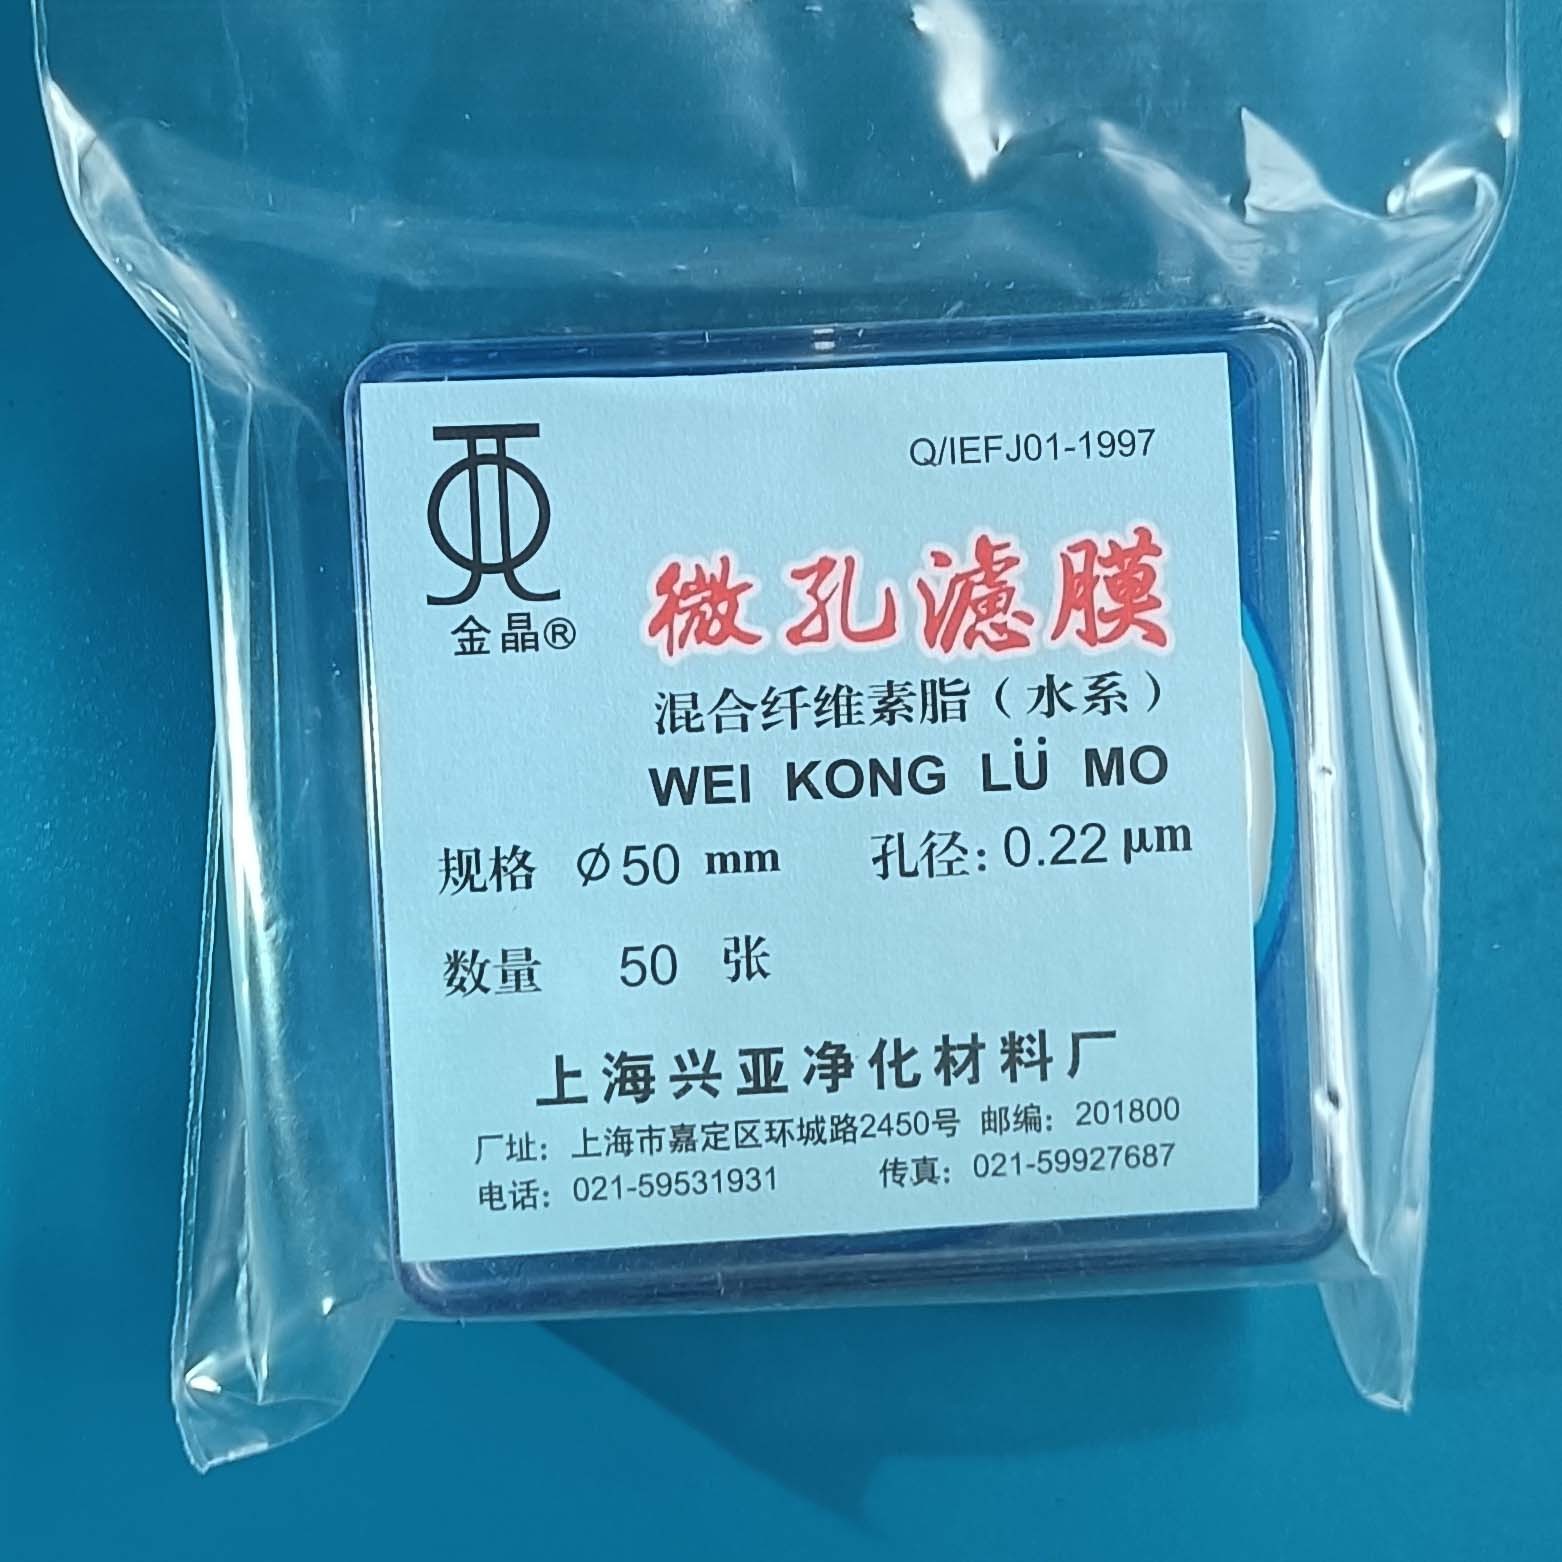 上海兴亚 上海兴亚 青岛库 混合纤维微孔滤膜 单盒 50/0.22 上海兴亚 50/0.22 50/0.22